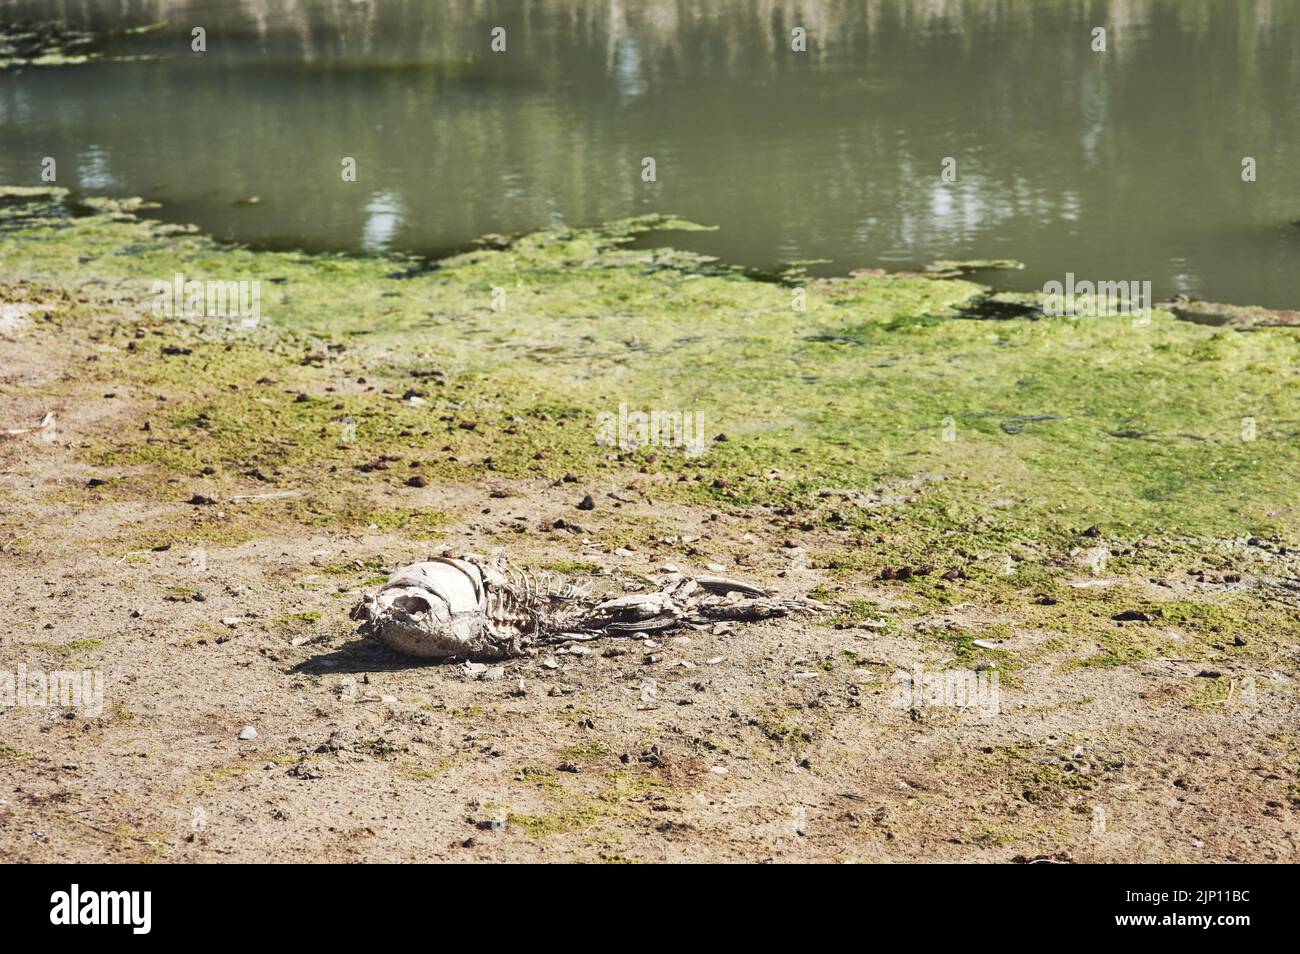 Che triste vista da vedere. Un pesce morto che giace su una zona di terra asciutta durante il giorno in cui una diga usa essere. Foto Stock